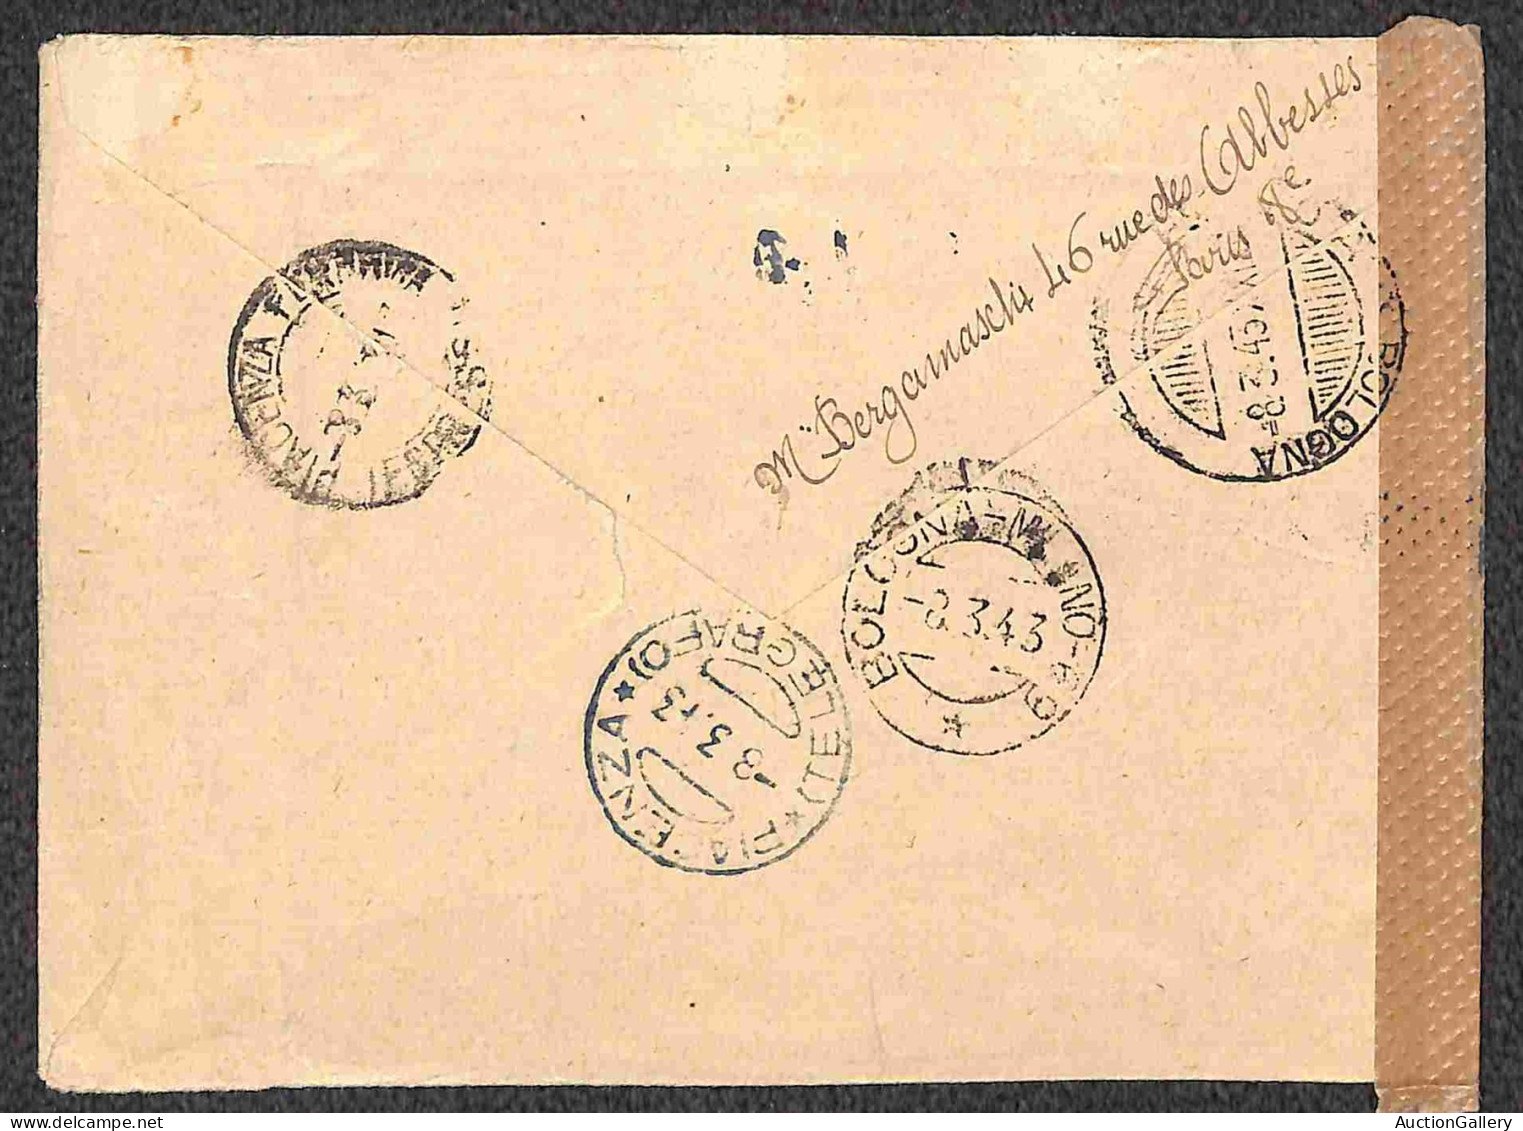 Europa - Francia - Interessante lotto del periodo Petain composto da due lettere espresso e due campioni senza valore ra